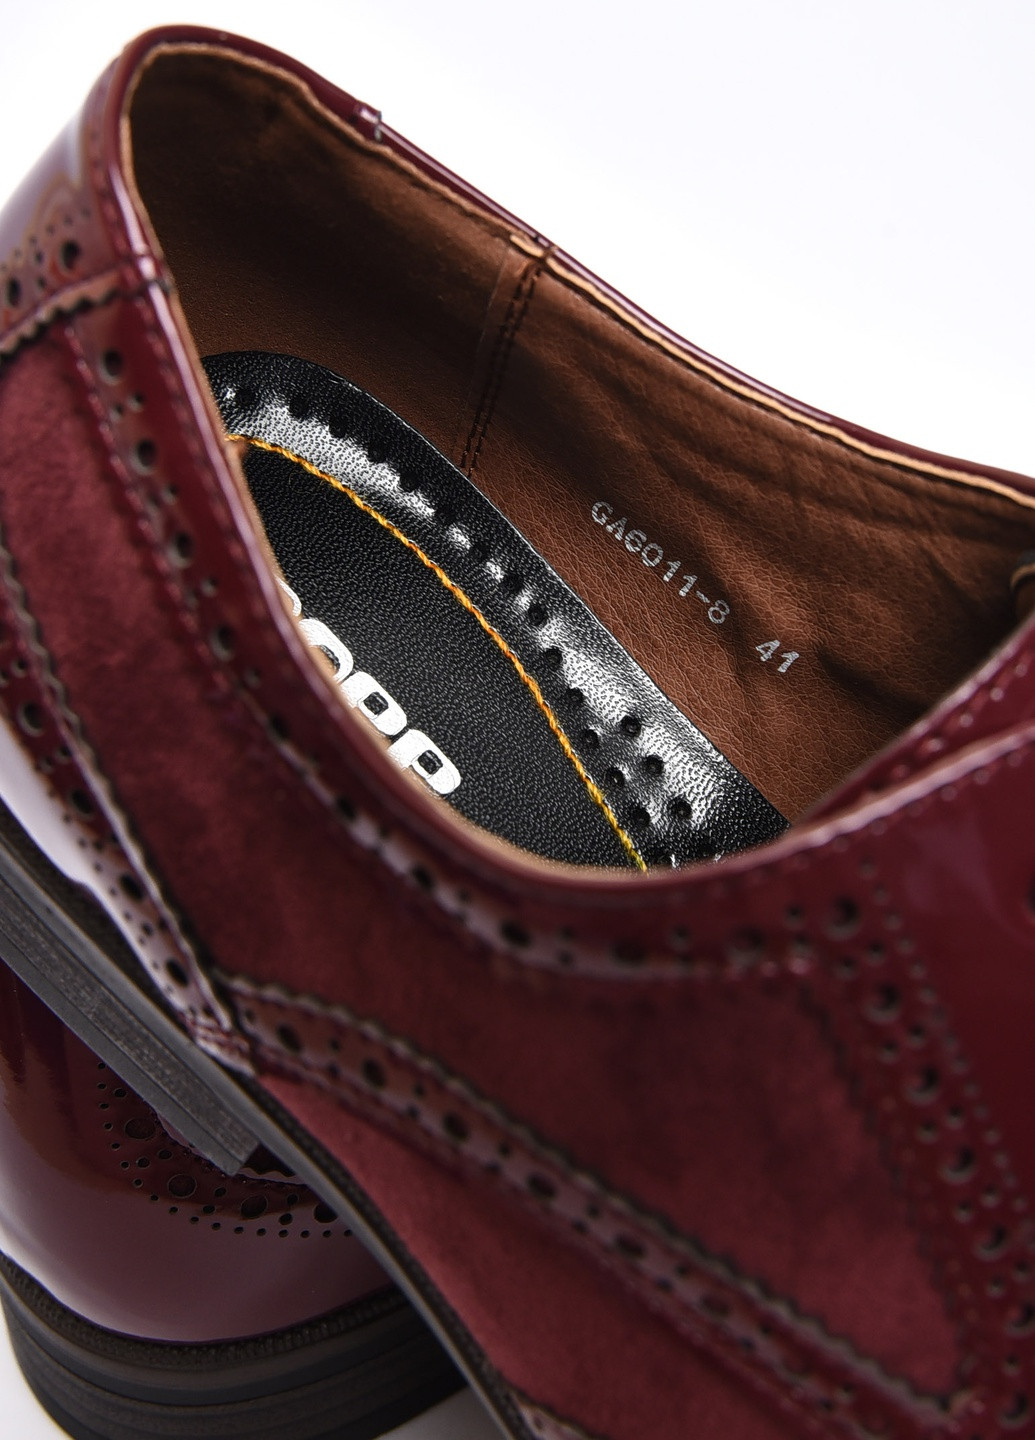 Бордовые классические туфли мужские бордового цвета Let's Shop на шнурках